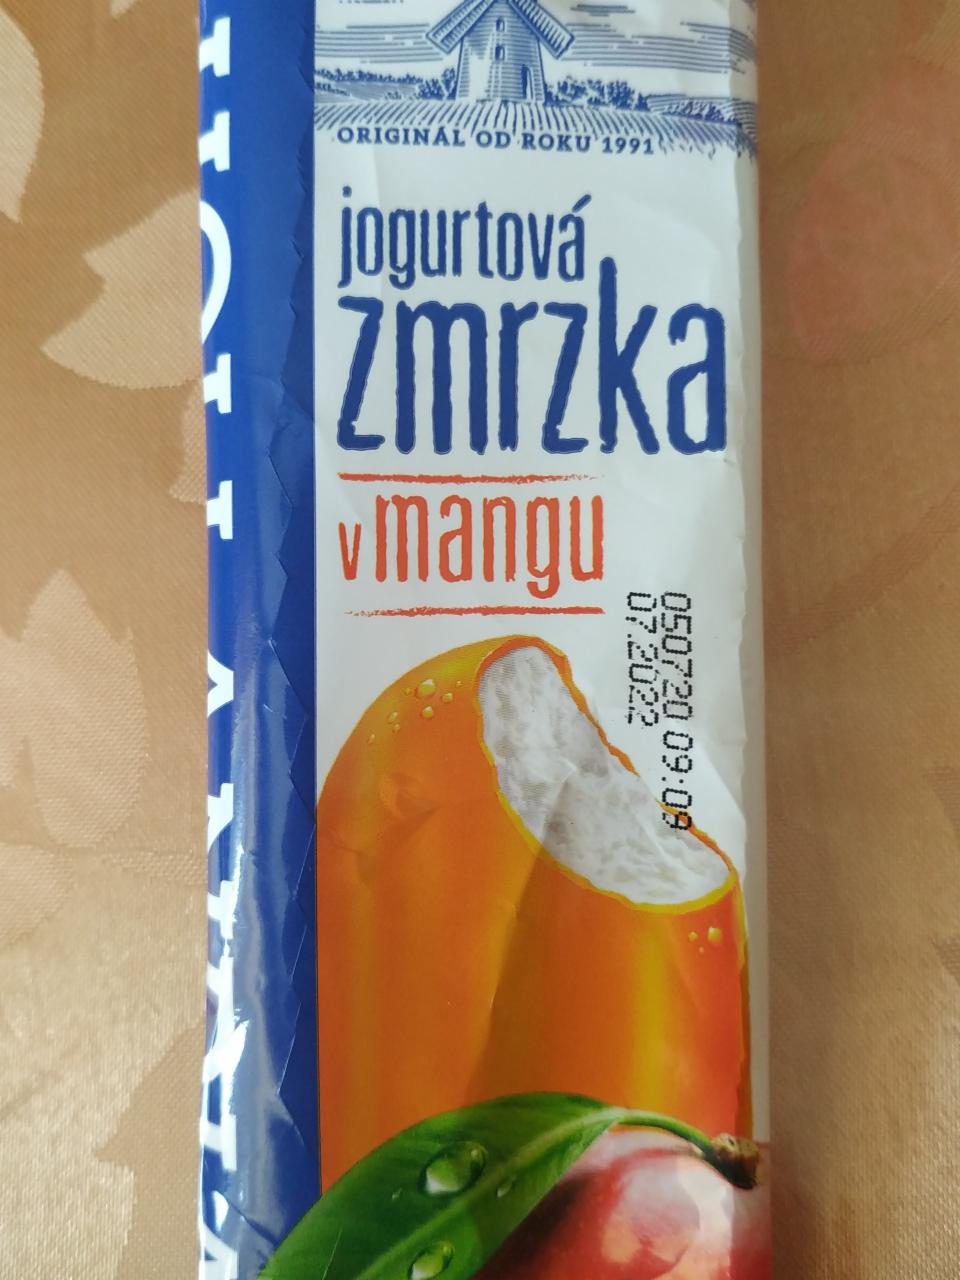 Fotografie - Hollandia jogurtová zmrzka v mangu